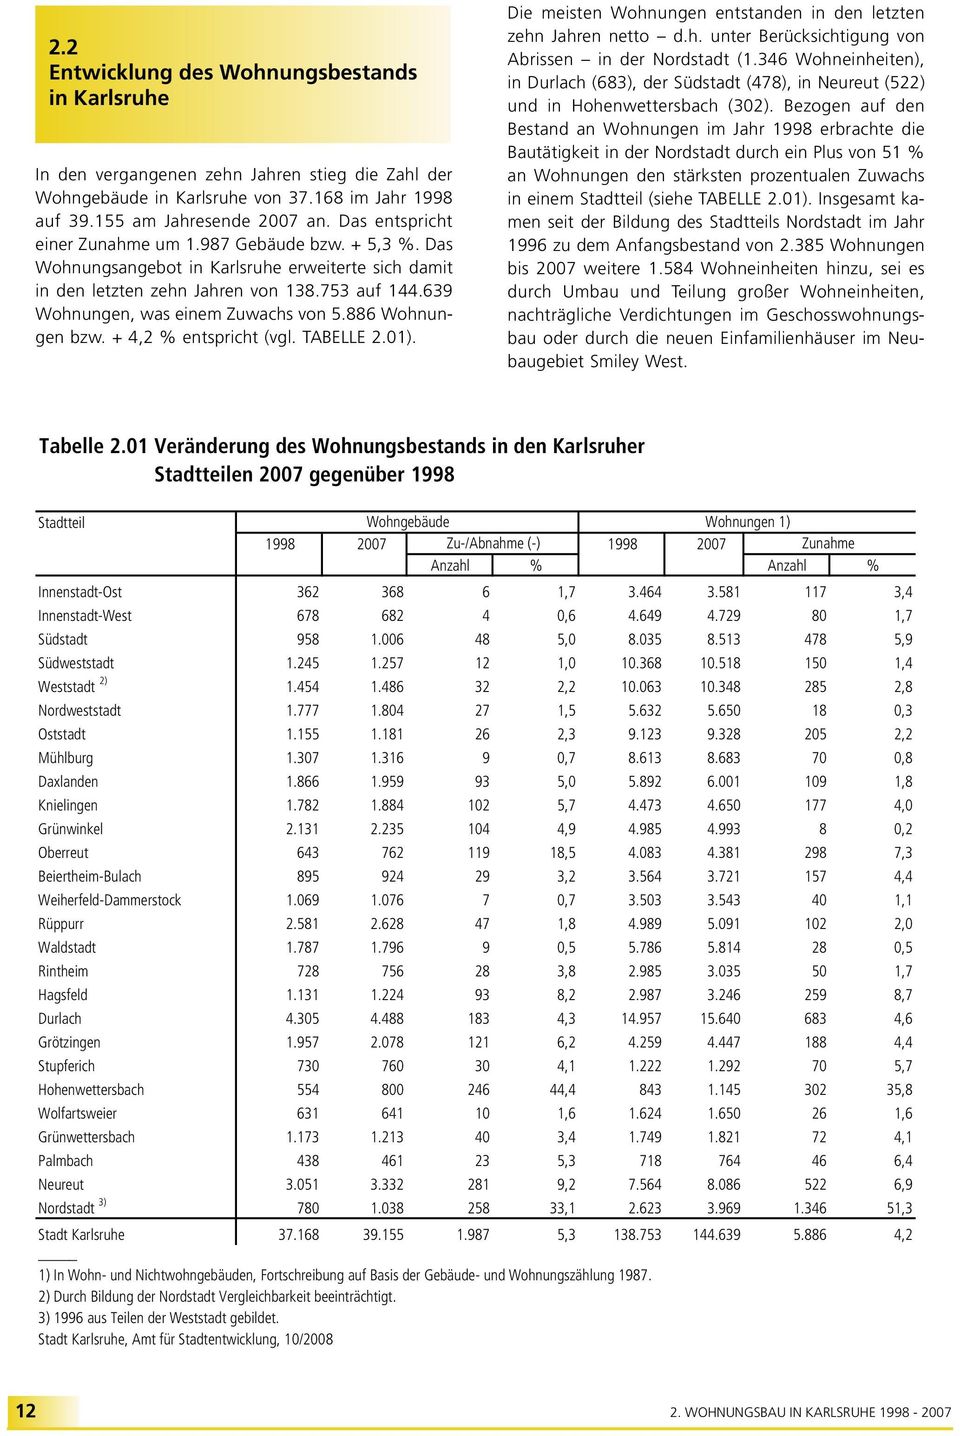 639 Wohnungen, was einem Zuwachs von 5.886 Wohnungen bzw. + 4,2 % entspricht (vgl. TABELLE 2.01). Die meisten Wohnungen entstanden in den letzten zehn Jahren netto d.h. unter Berücksichtigung von Abrissen in der Nordstadt (1.